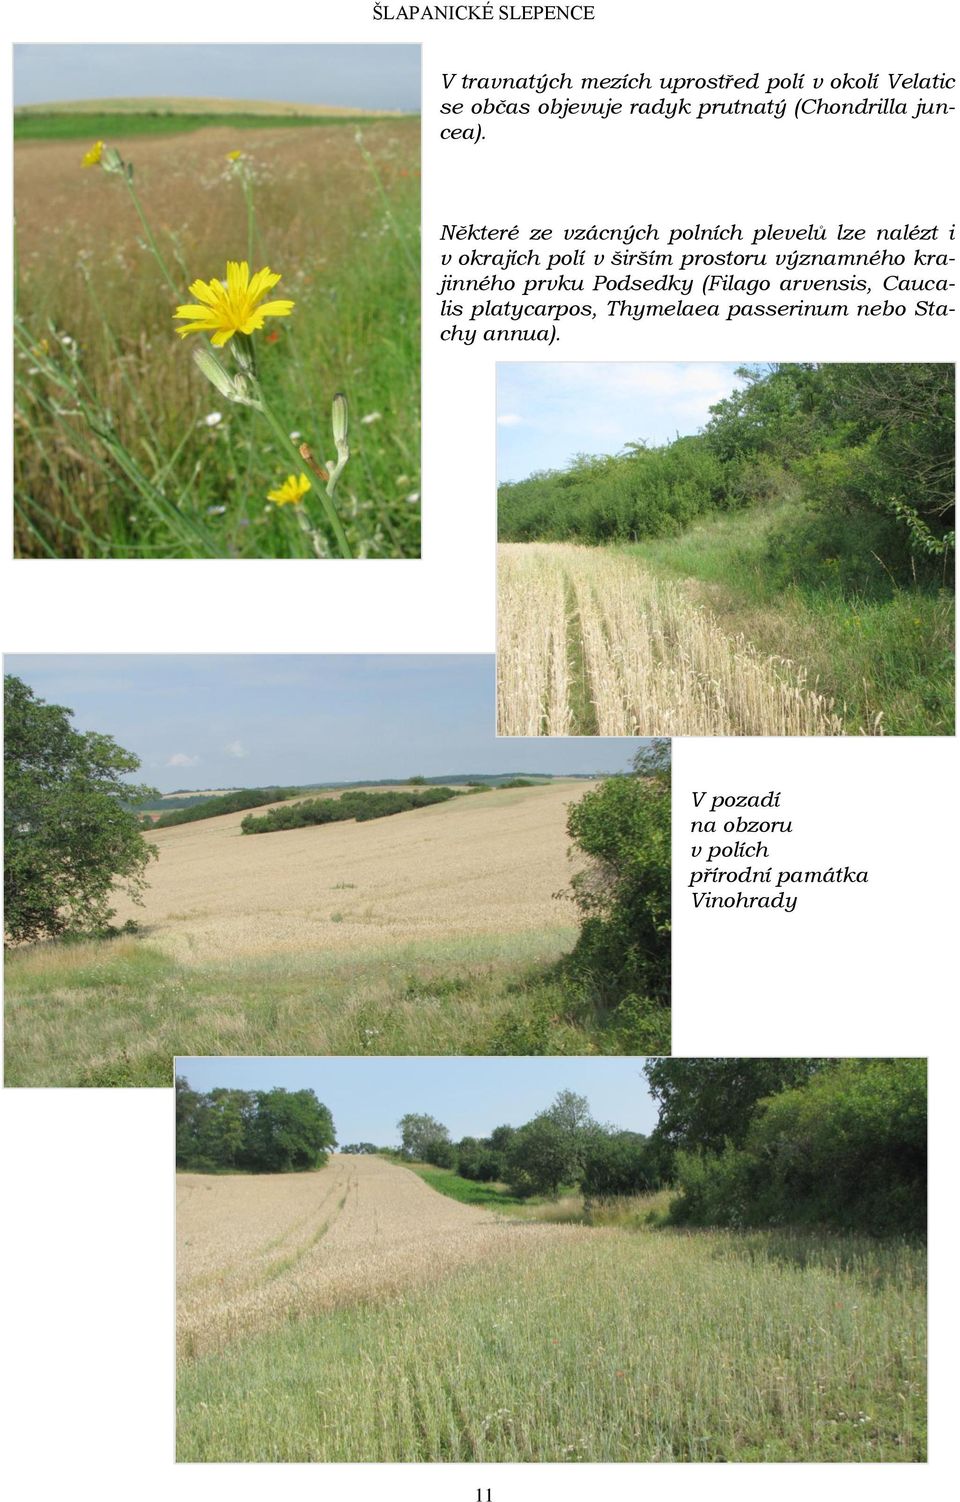 Některé ze vzácných polních plevelů lze nalézt i v okrajích polí v širším prostoru